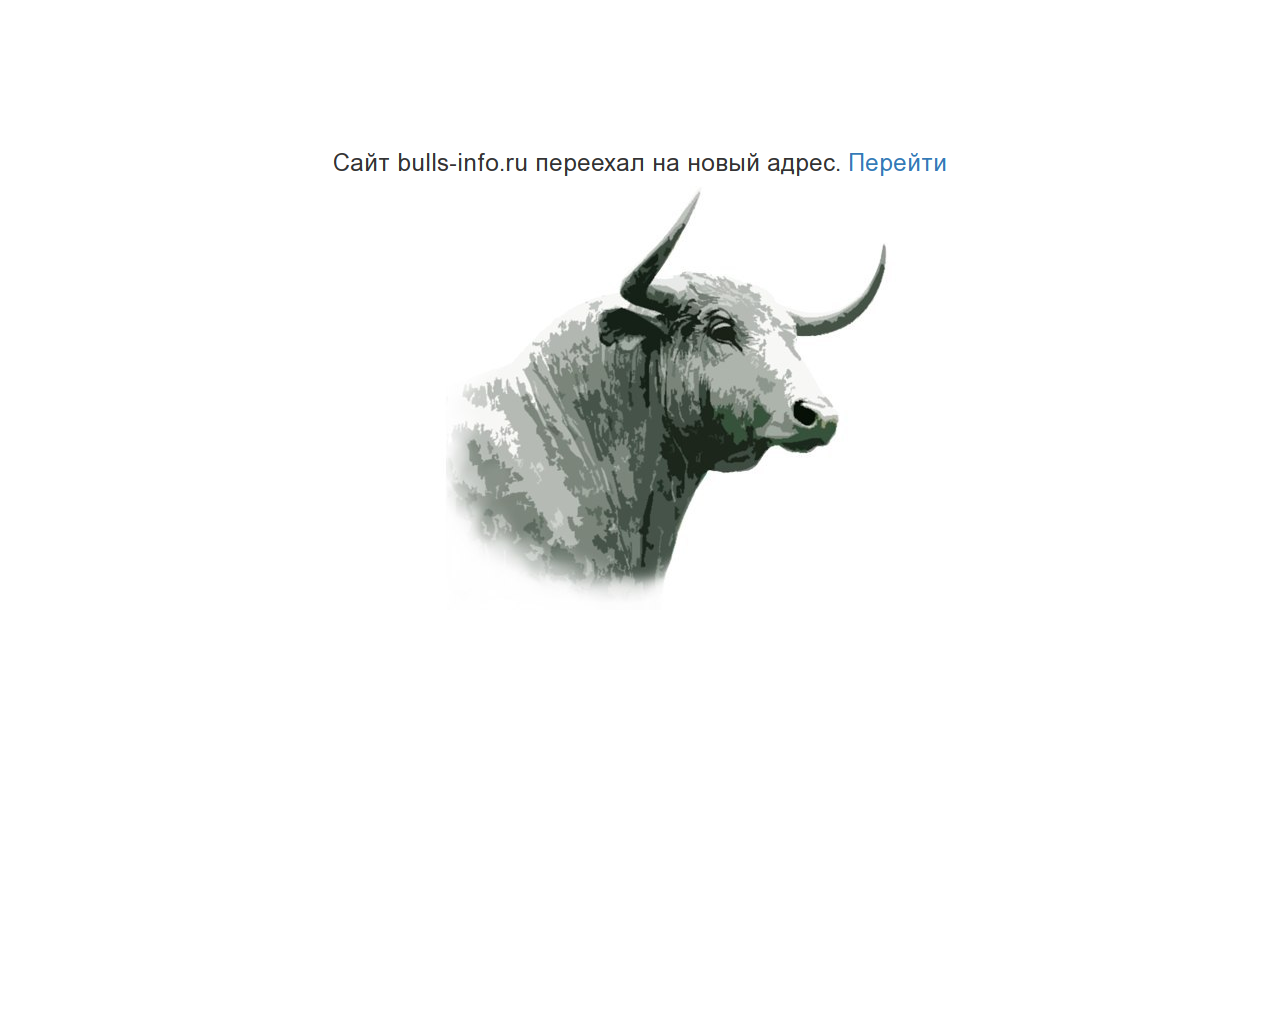 Изображение сайта bulls-info.ru в разрешении 1280x1024